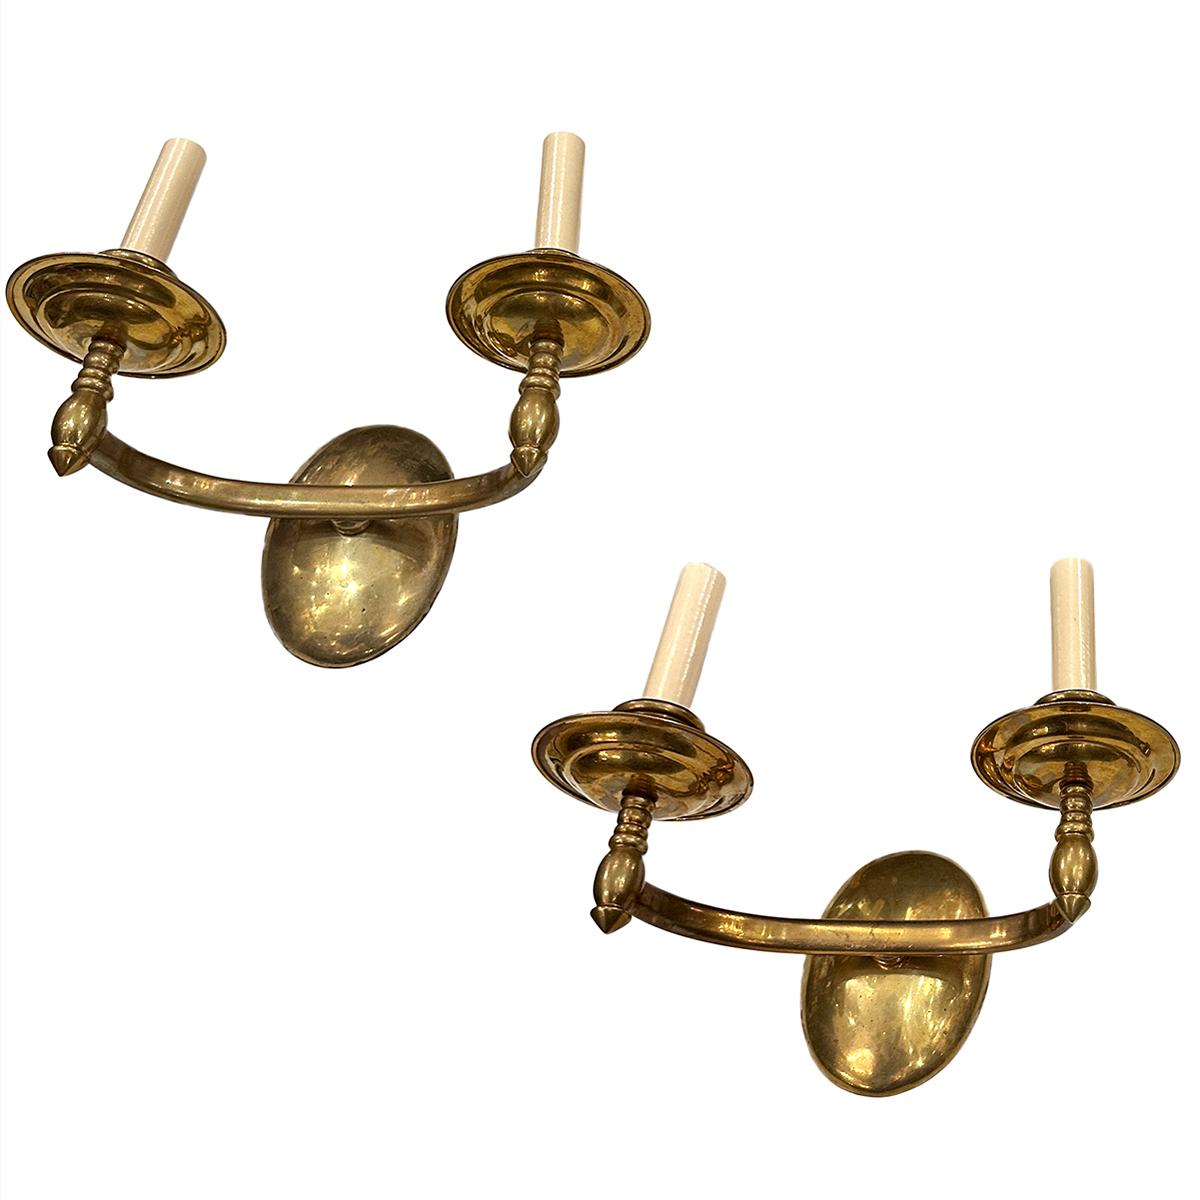 Satz von acht italienischen doppelten Bronzelampen aus den 1950er Jahren mit originaler Patina. Verkauft pro Paar.

Abmessungen:
Höhe: 10